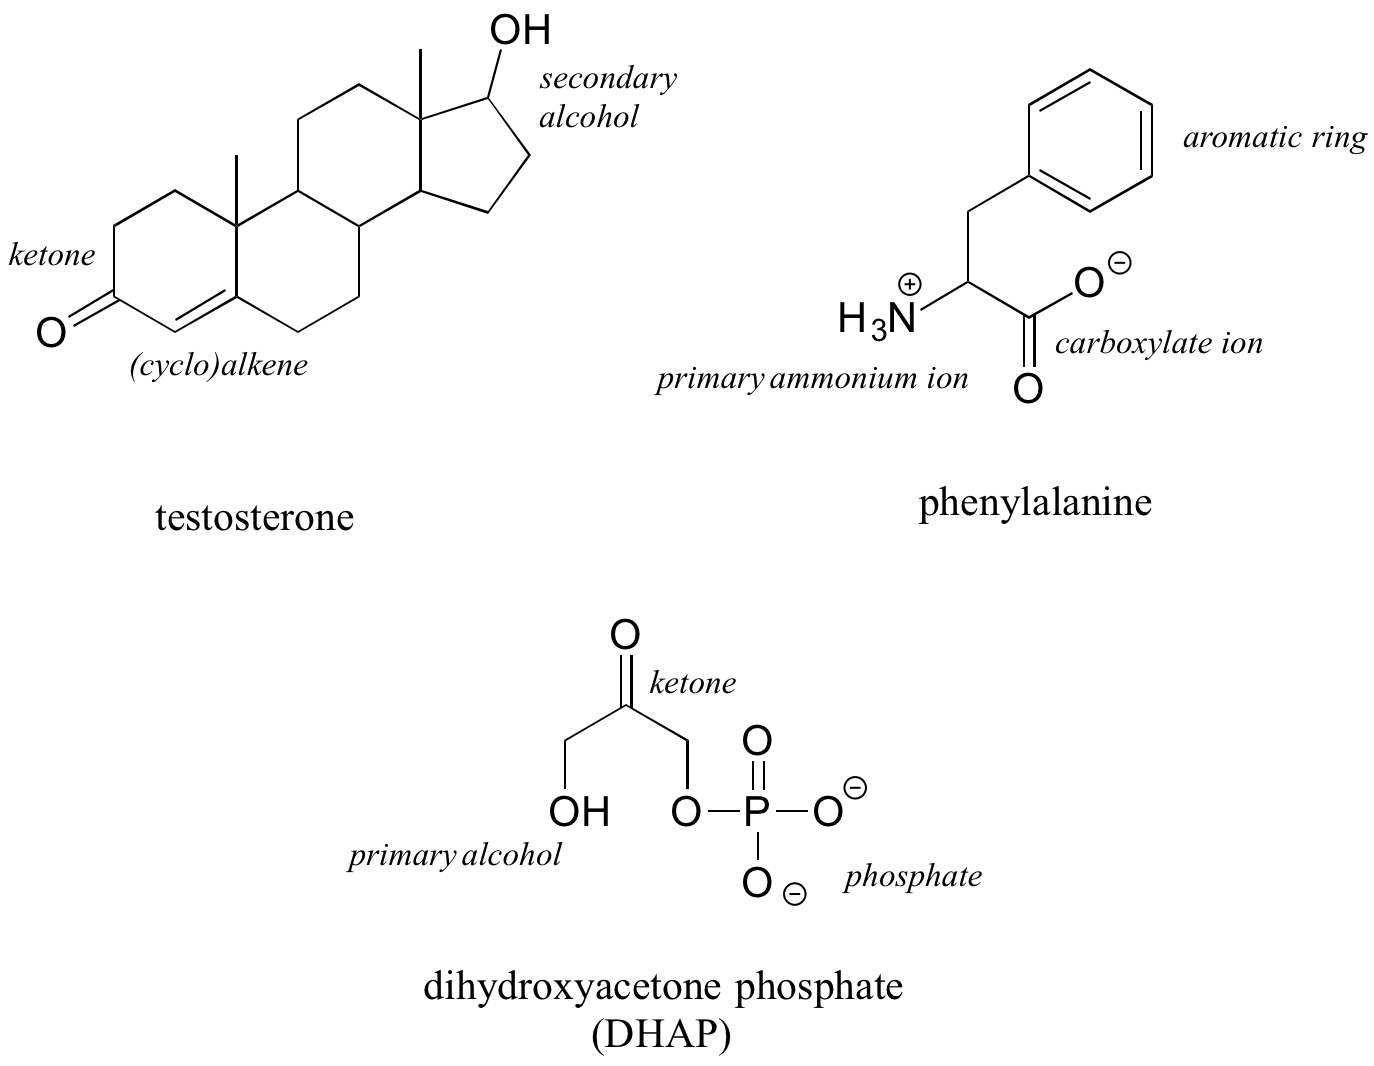 Arriba a la izquierda: La molécula de testosterona contiene grupos funcionales cicloalcano, alcohol secundario y cetona. Arriba a la derecha: la molécula de fenilanilina contiene iones amonio primario, ion carboxilato y grupos funcionales de anillo aromático. Abajo: la molécula de fosfato de dihidroxiacetona contiene grupos funcionales alcohol primario, cetona y fosfato.